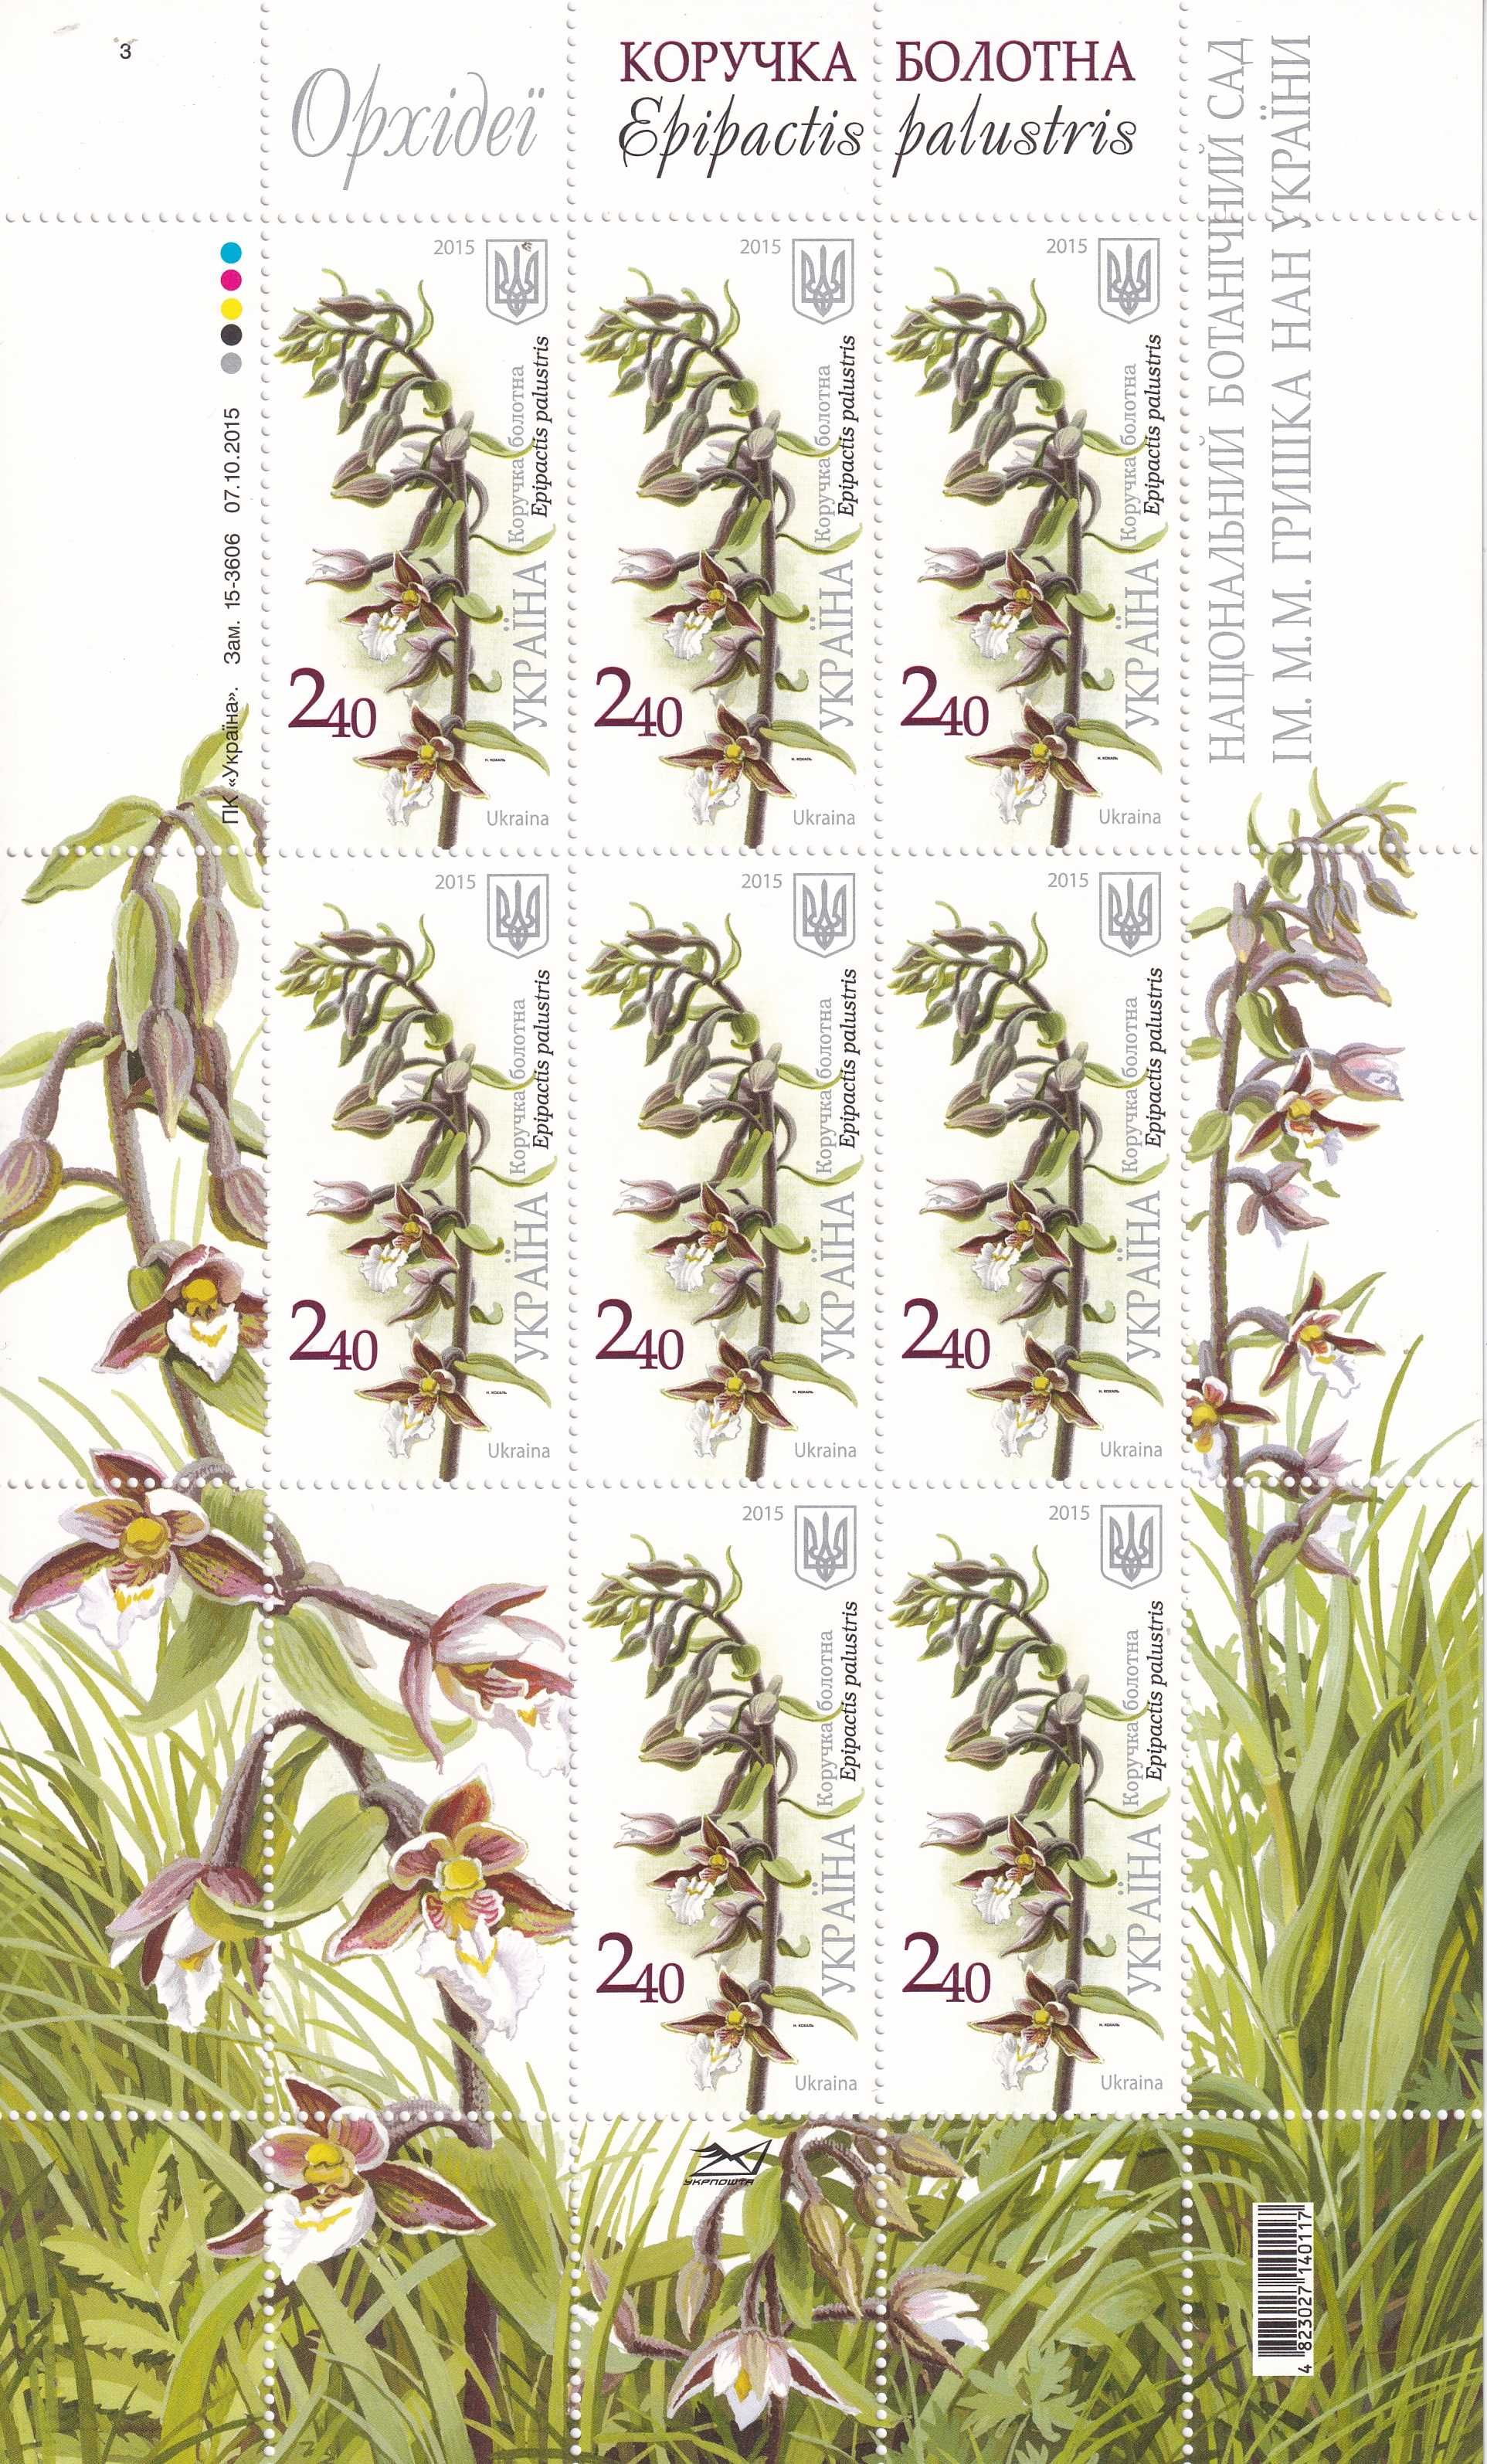 znaczki pocztowe - Ukraina 2015 cena 19,90 zł kat.15€ (3) - flora